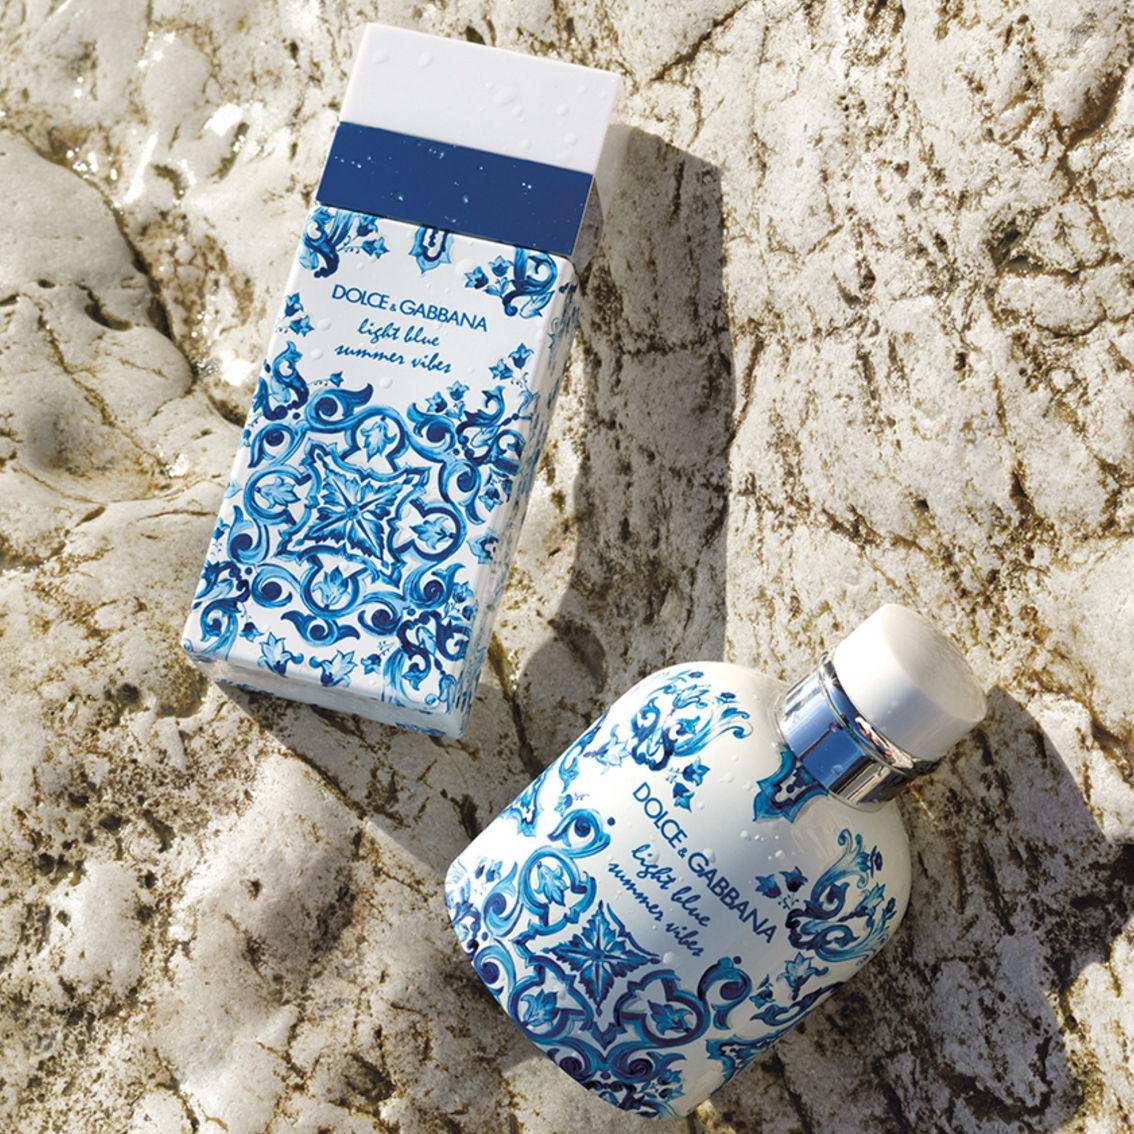 Dolce & Gabbana Light Blue Summer Vibes Pour Homme Eau de Toilette - Image 3 of 4